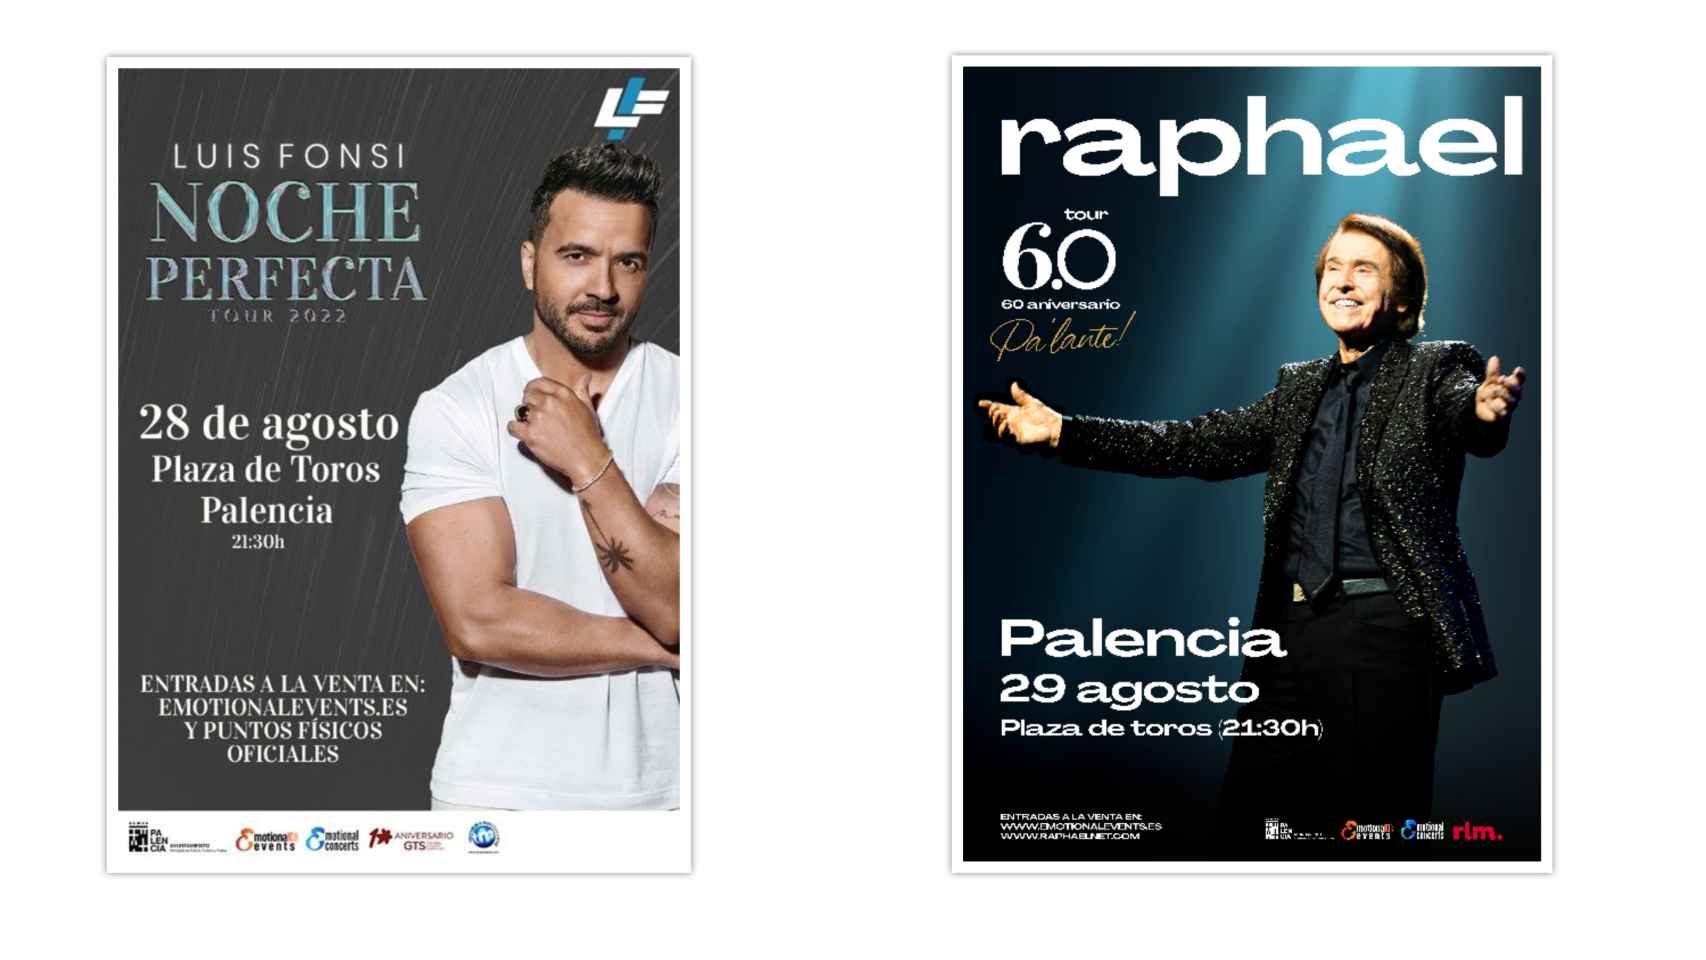 Carteles de los conciertos de Luis Fonsi y Raphael en Palencia.